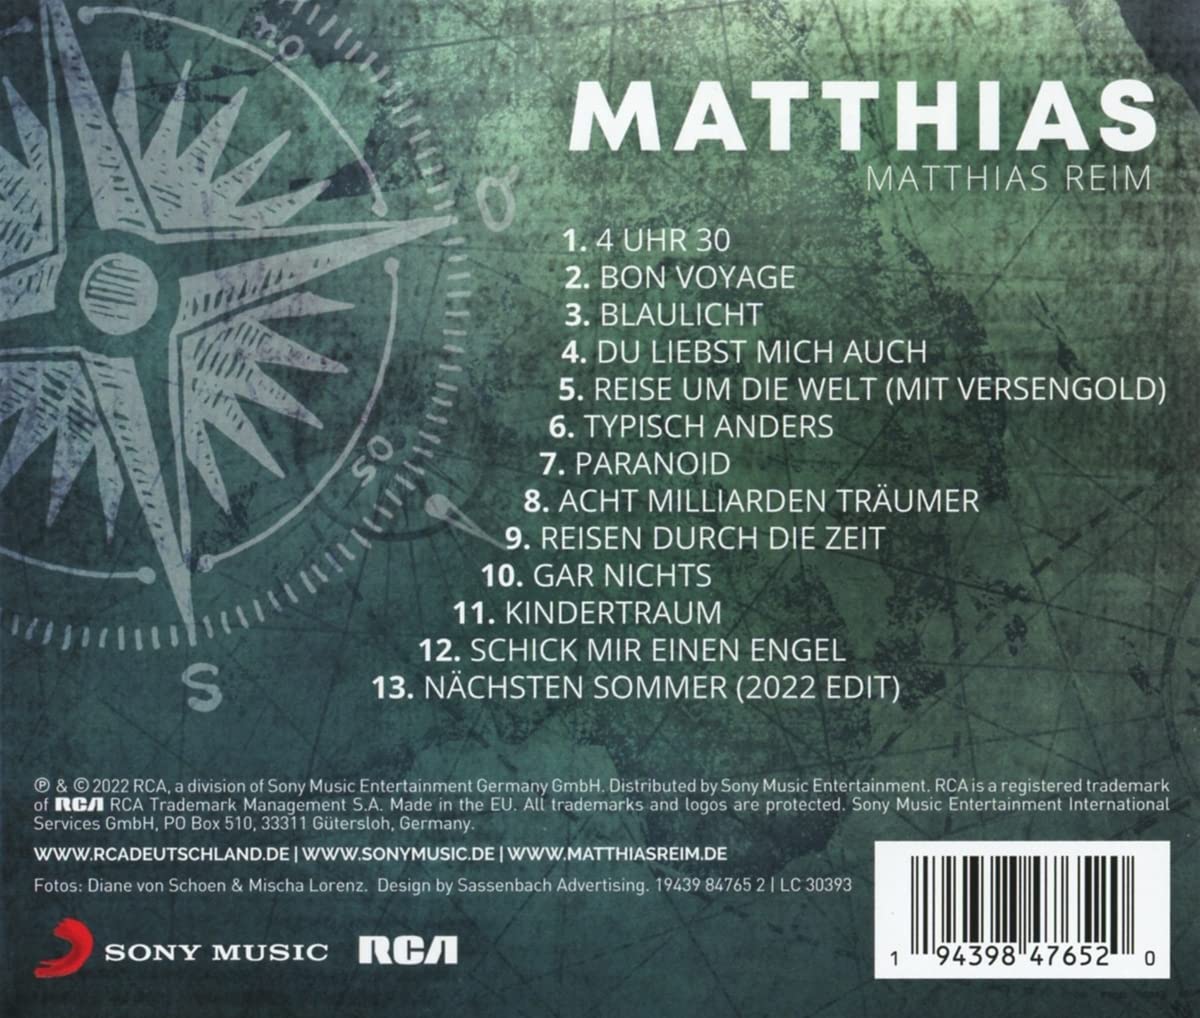 Matthias Reim - MATTHIAS (2022)